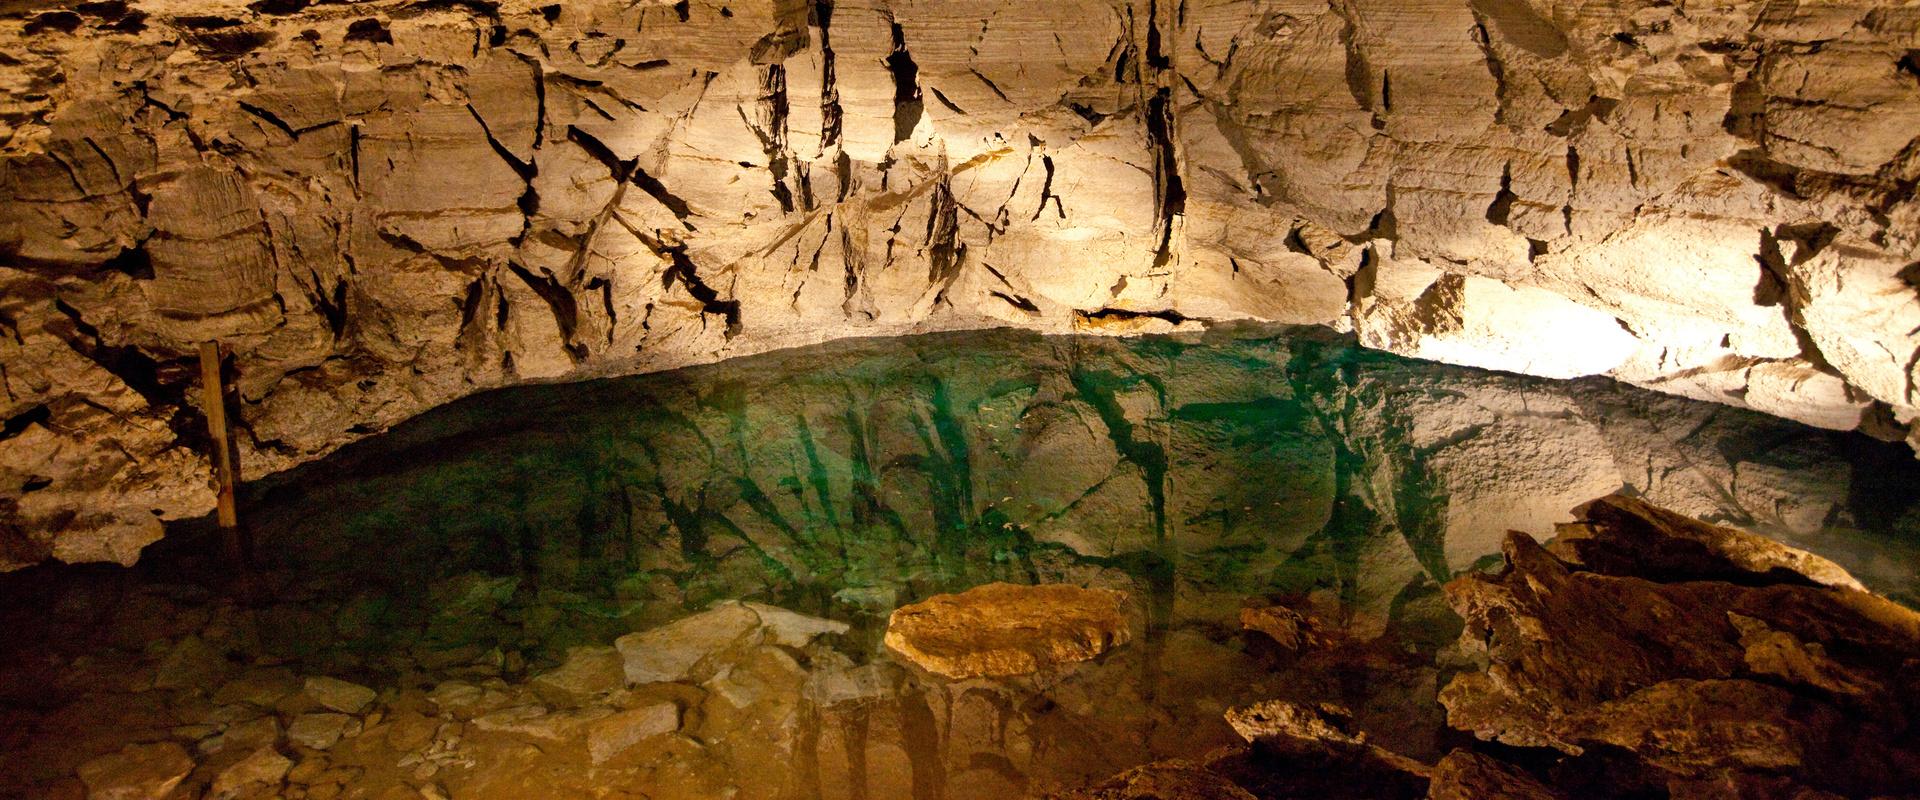 La grotte de Koungour Ice Cave, Russie